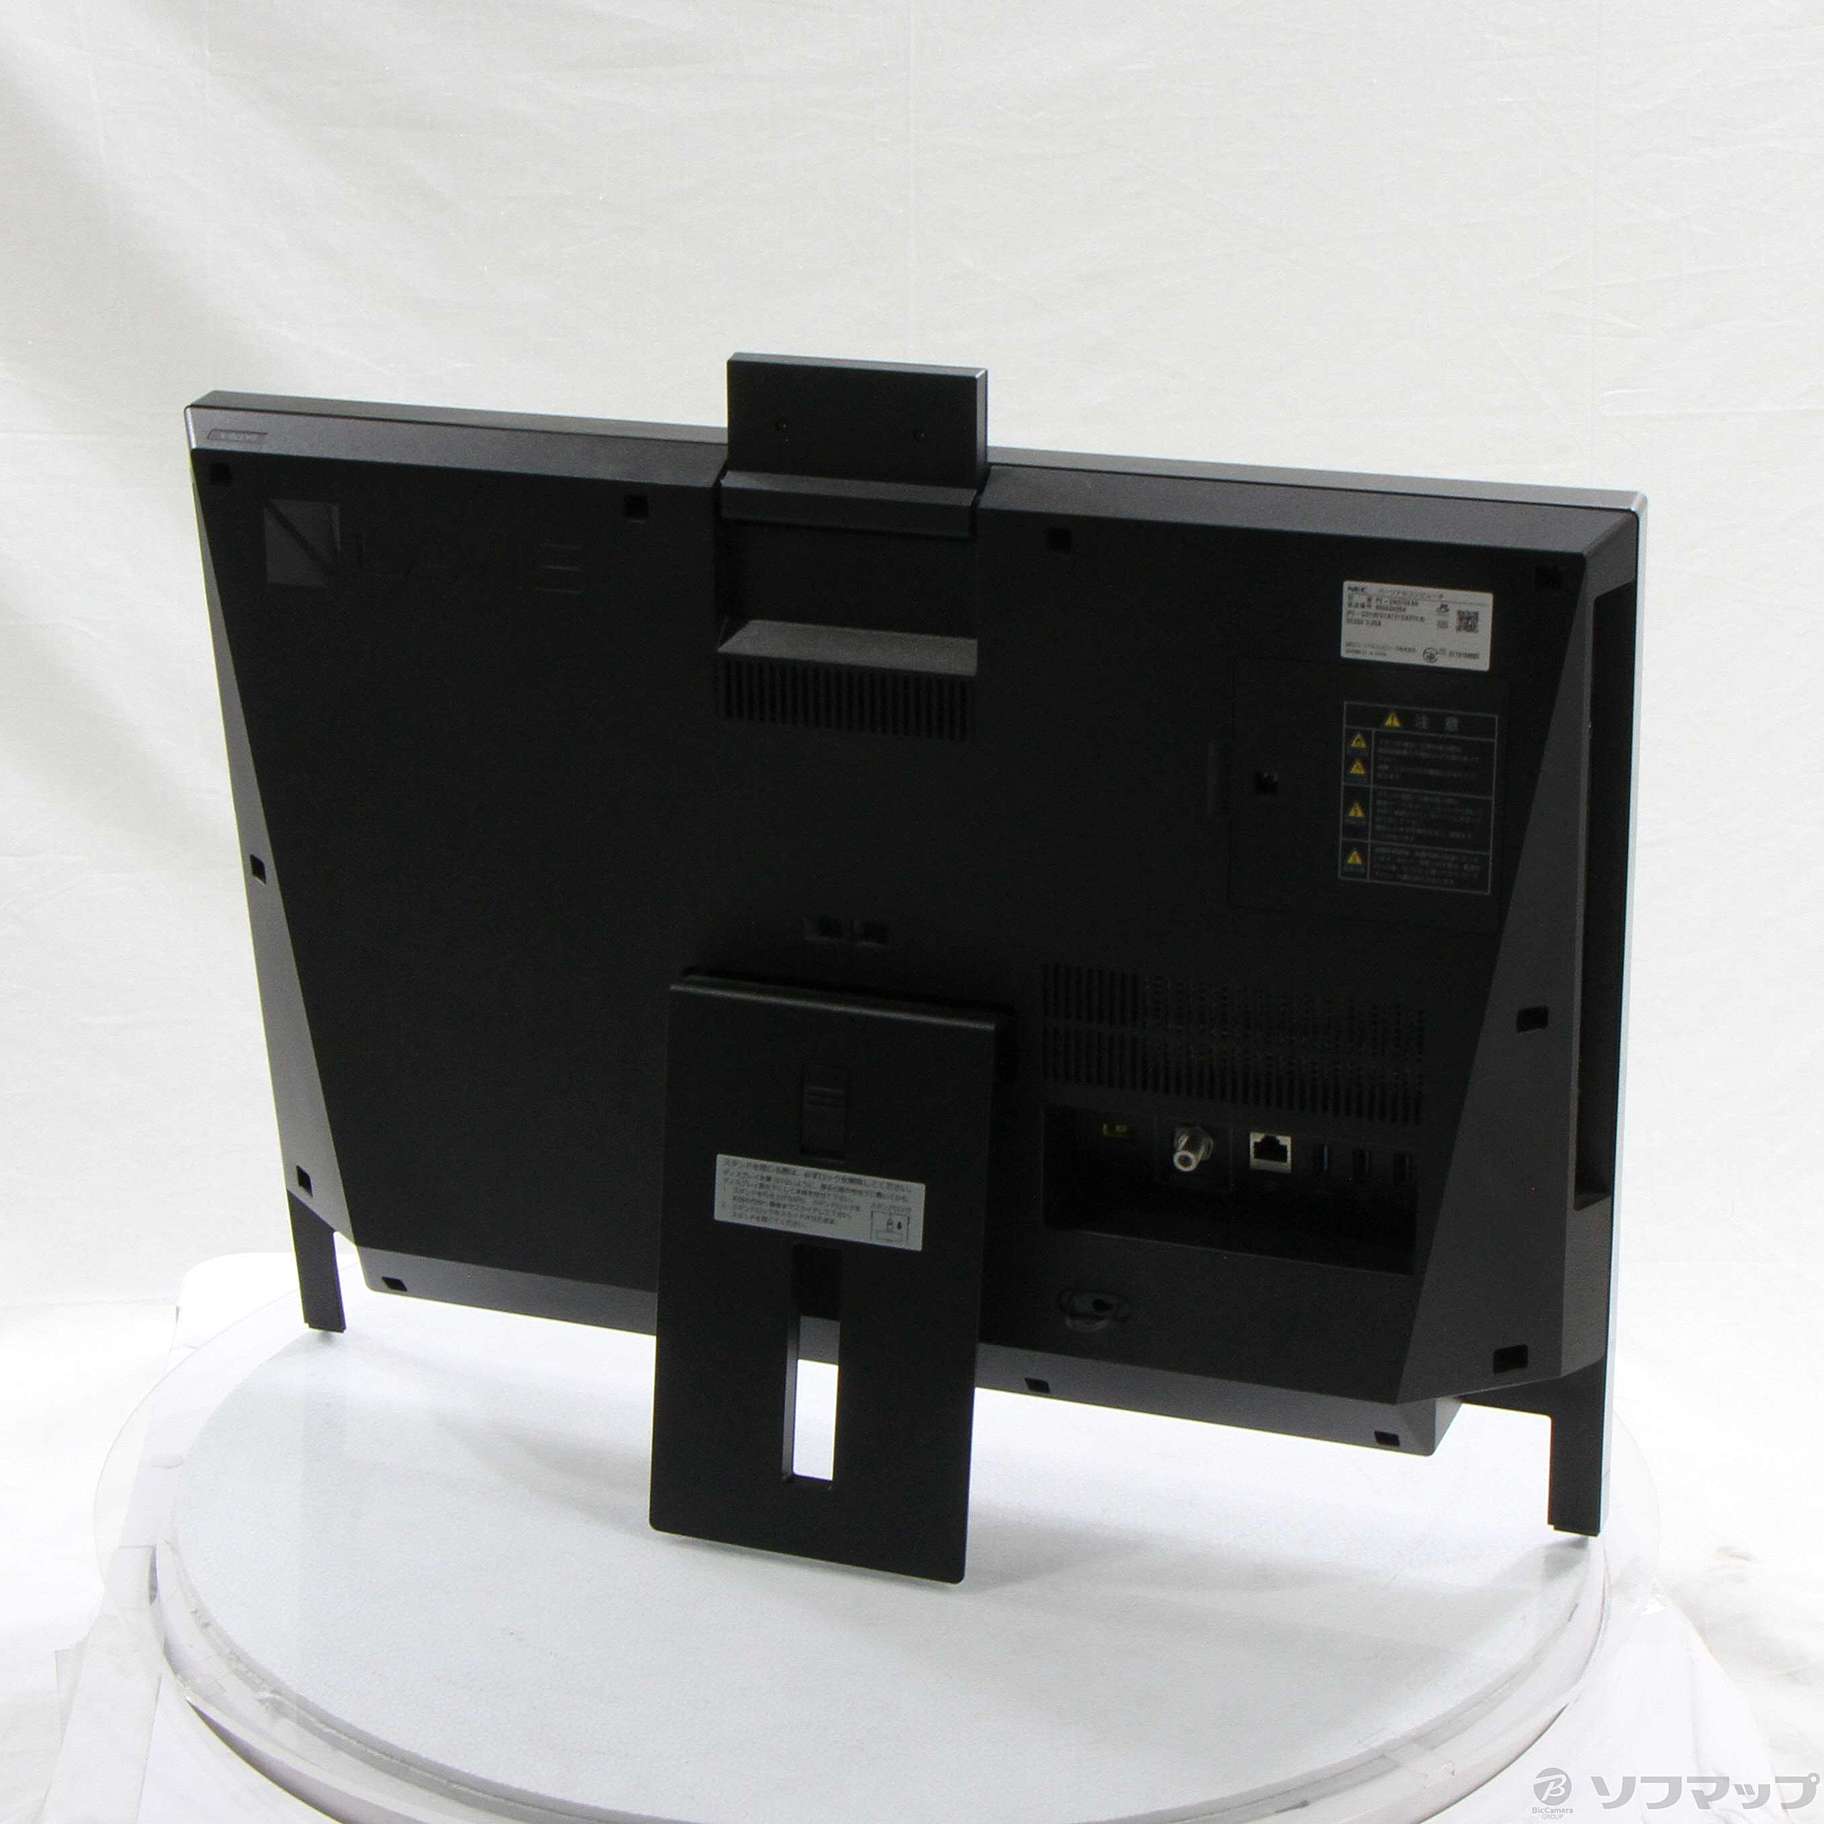 LAVIE Desk All-in-one DA370／KAR PC-DA370KAR ラズベリーレッド 〔Windows 10〕